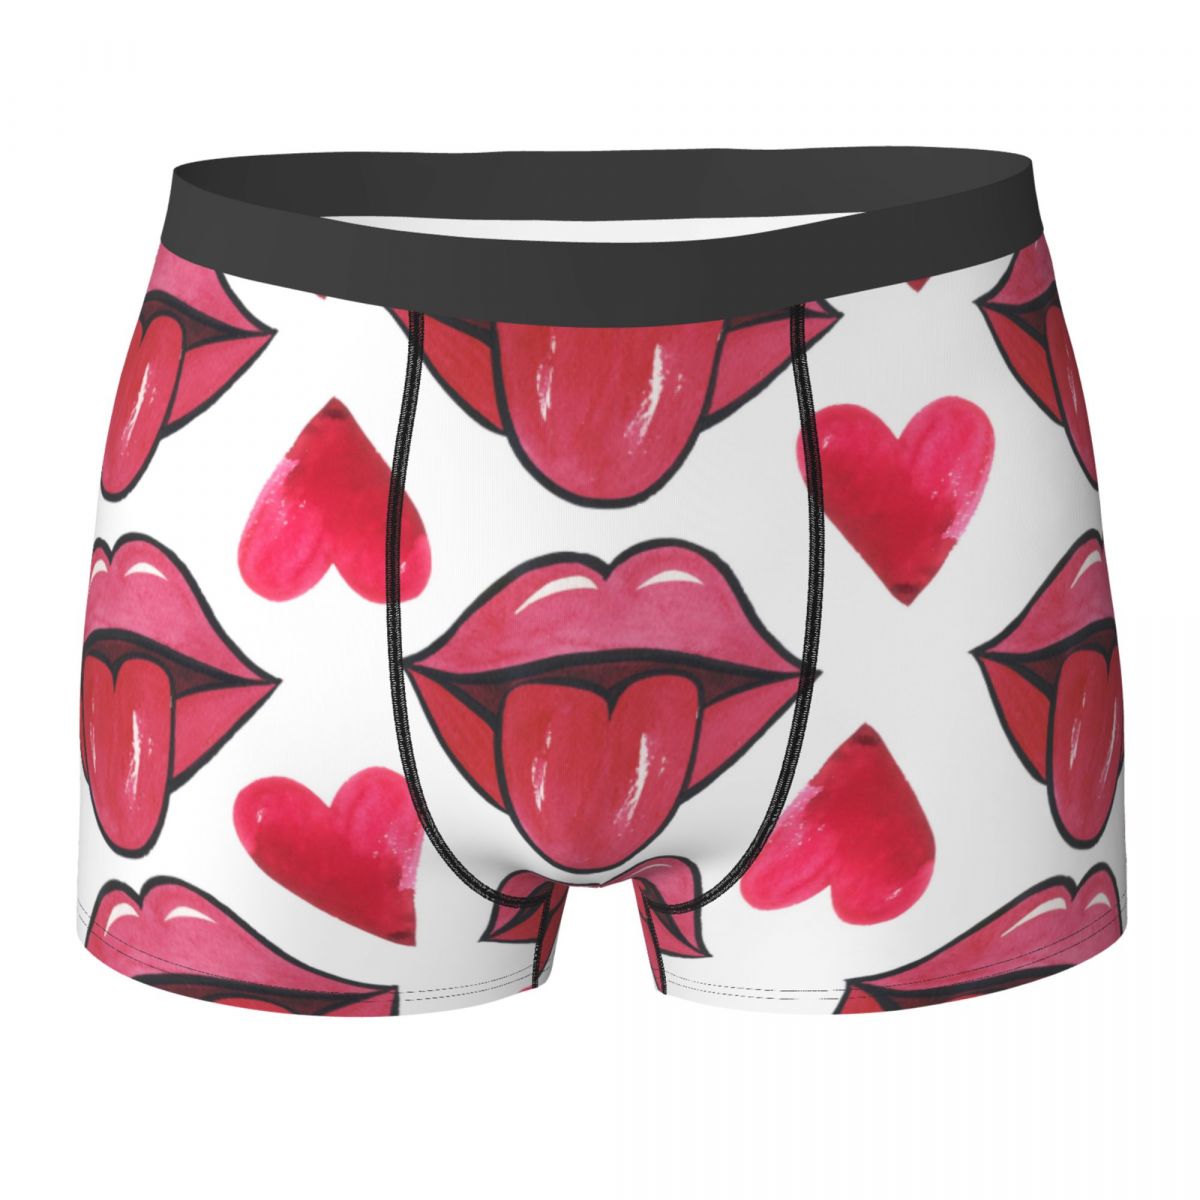 Rote Lippen und Herz-Mann Unterwäsche Boxer Shorts Shorts Slips lustige atmungsaktive Unterhosen für männliche S-XXL